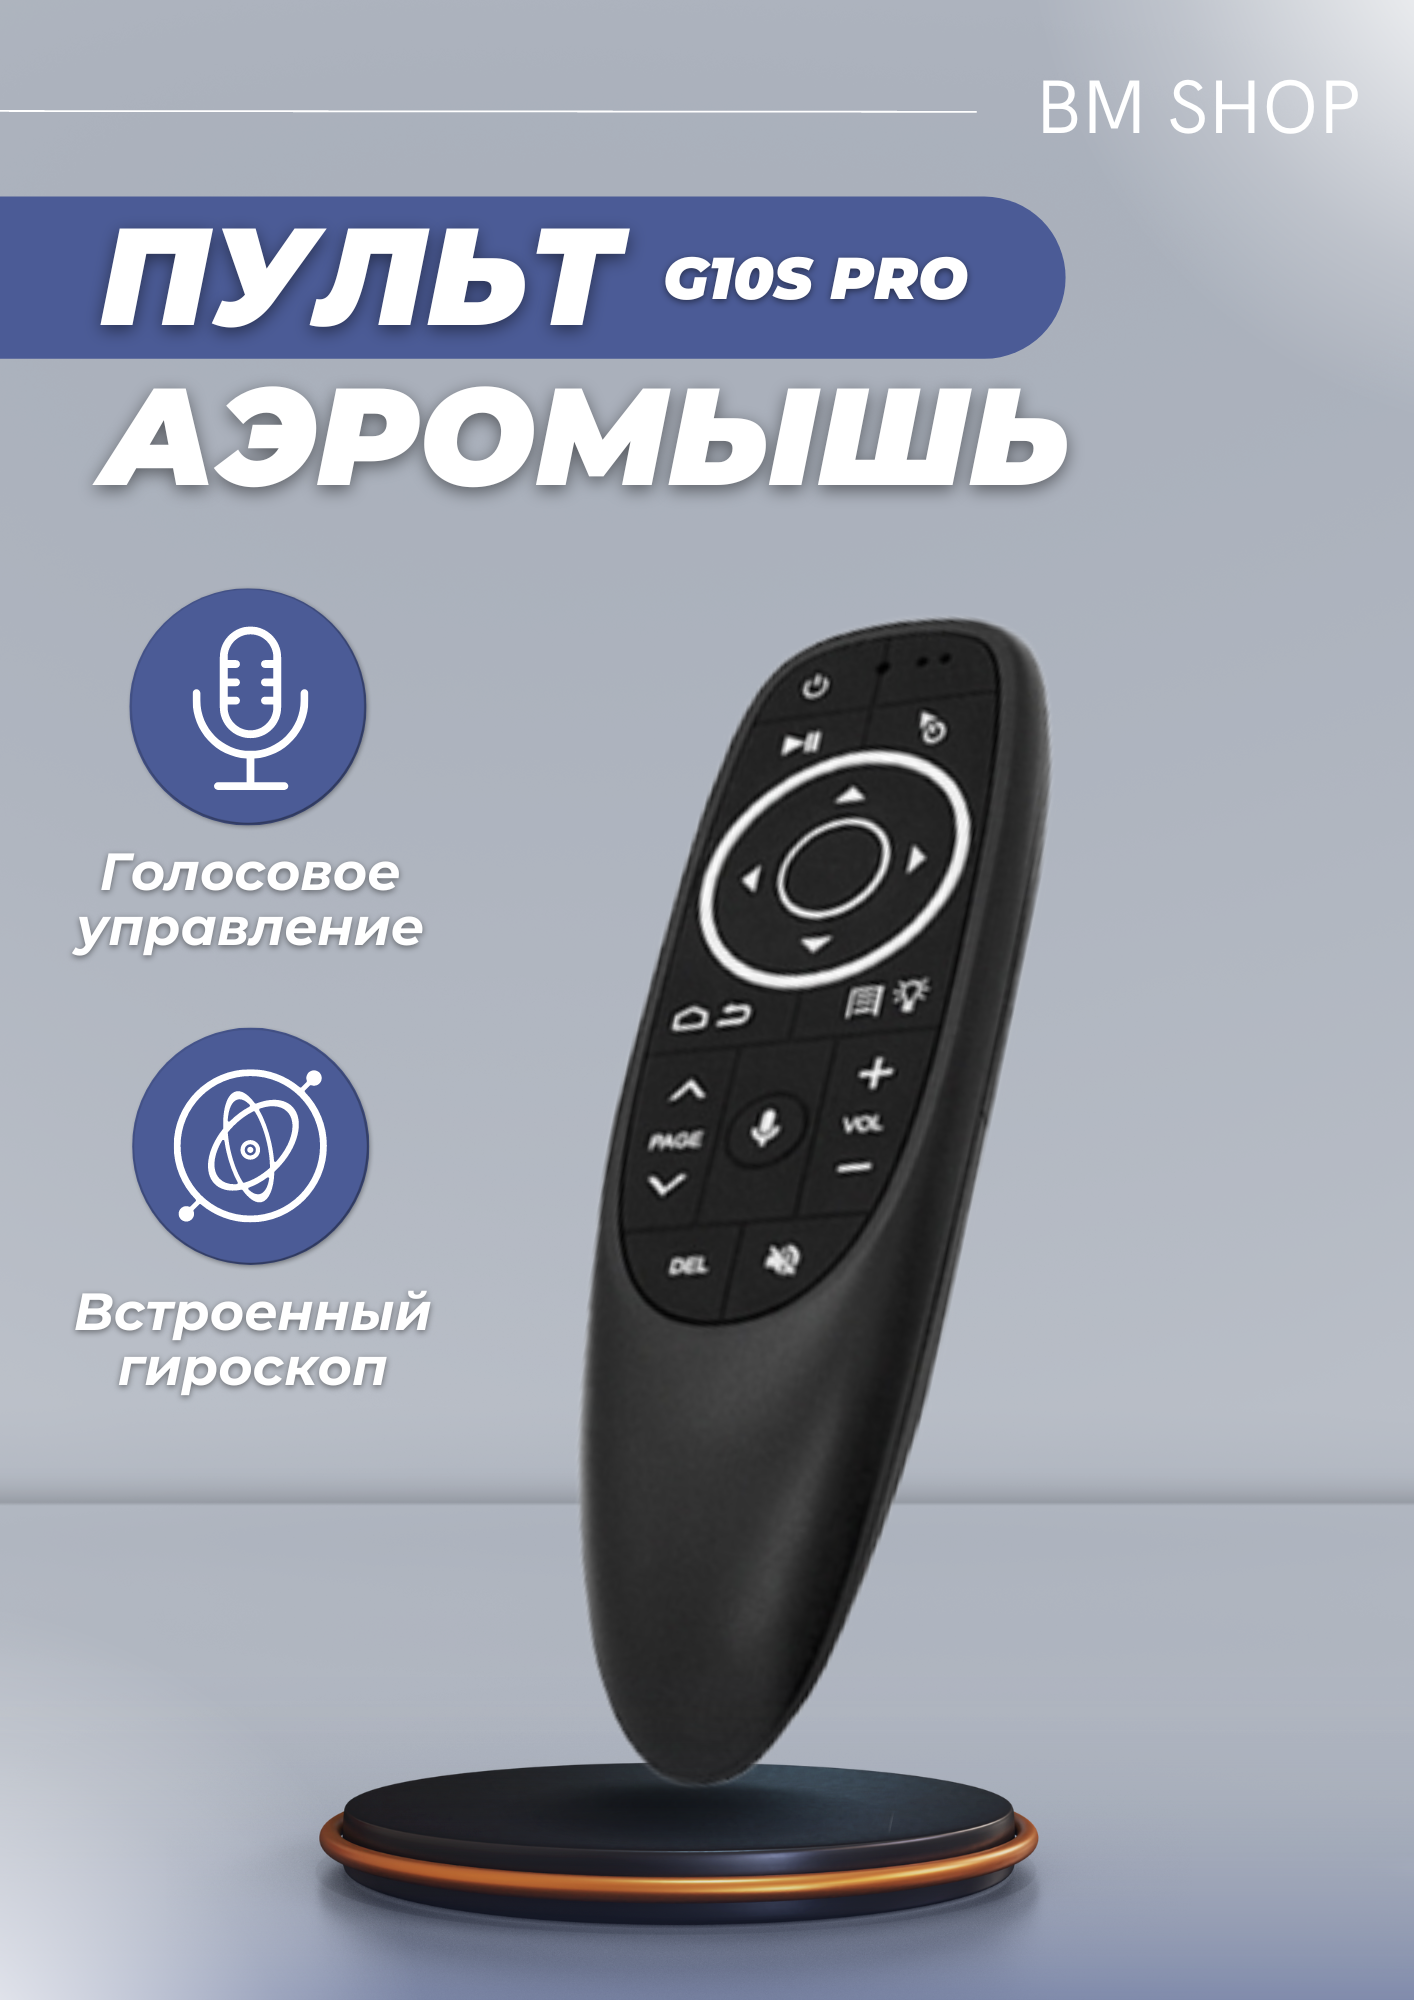 Пульт ДУ Vontar G10s Pro, черный — купить в интернет-магазине по низкой цене на Яндекс Маркете